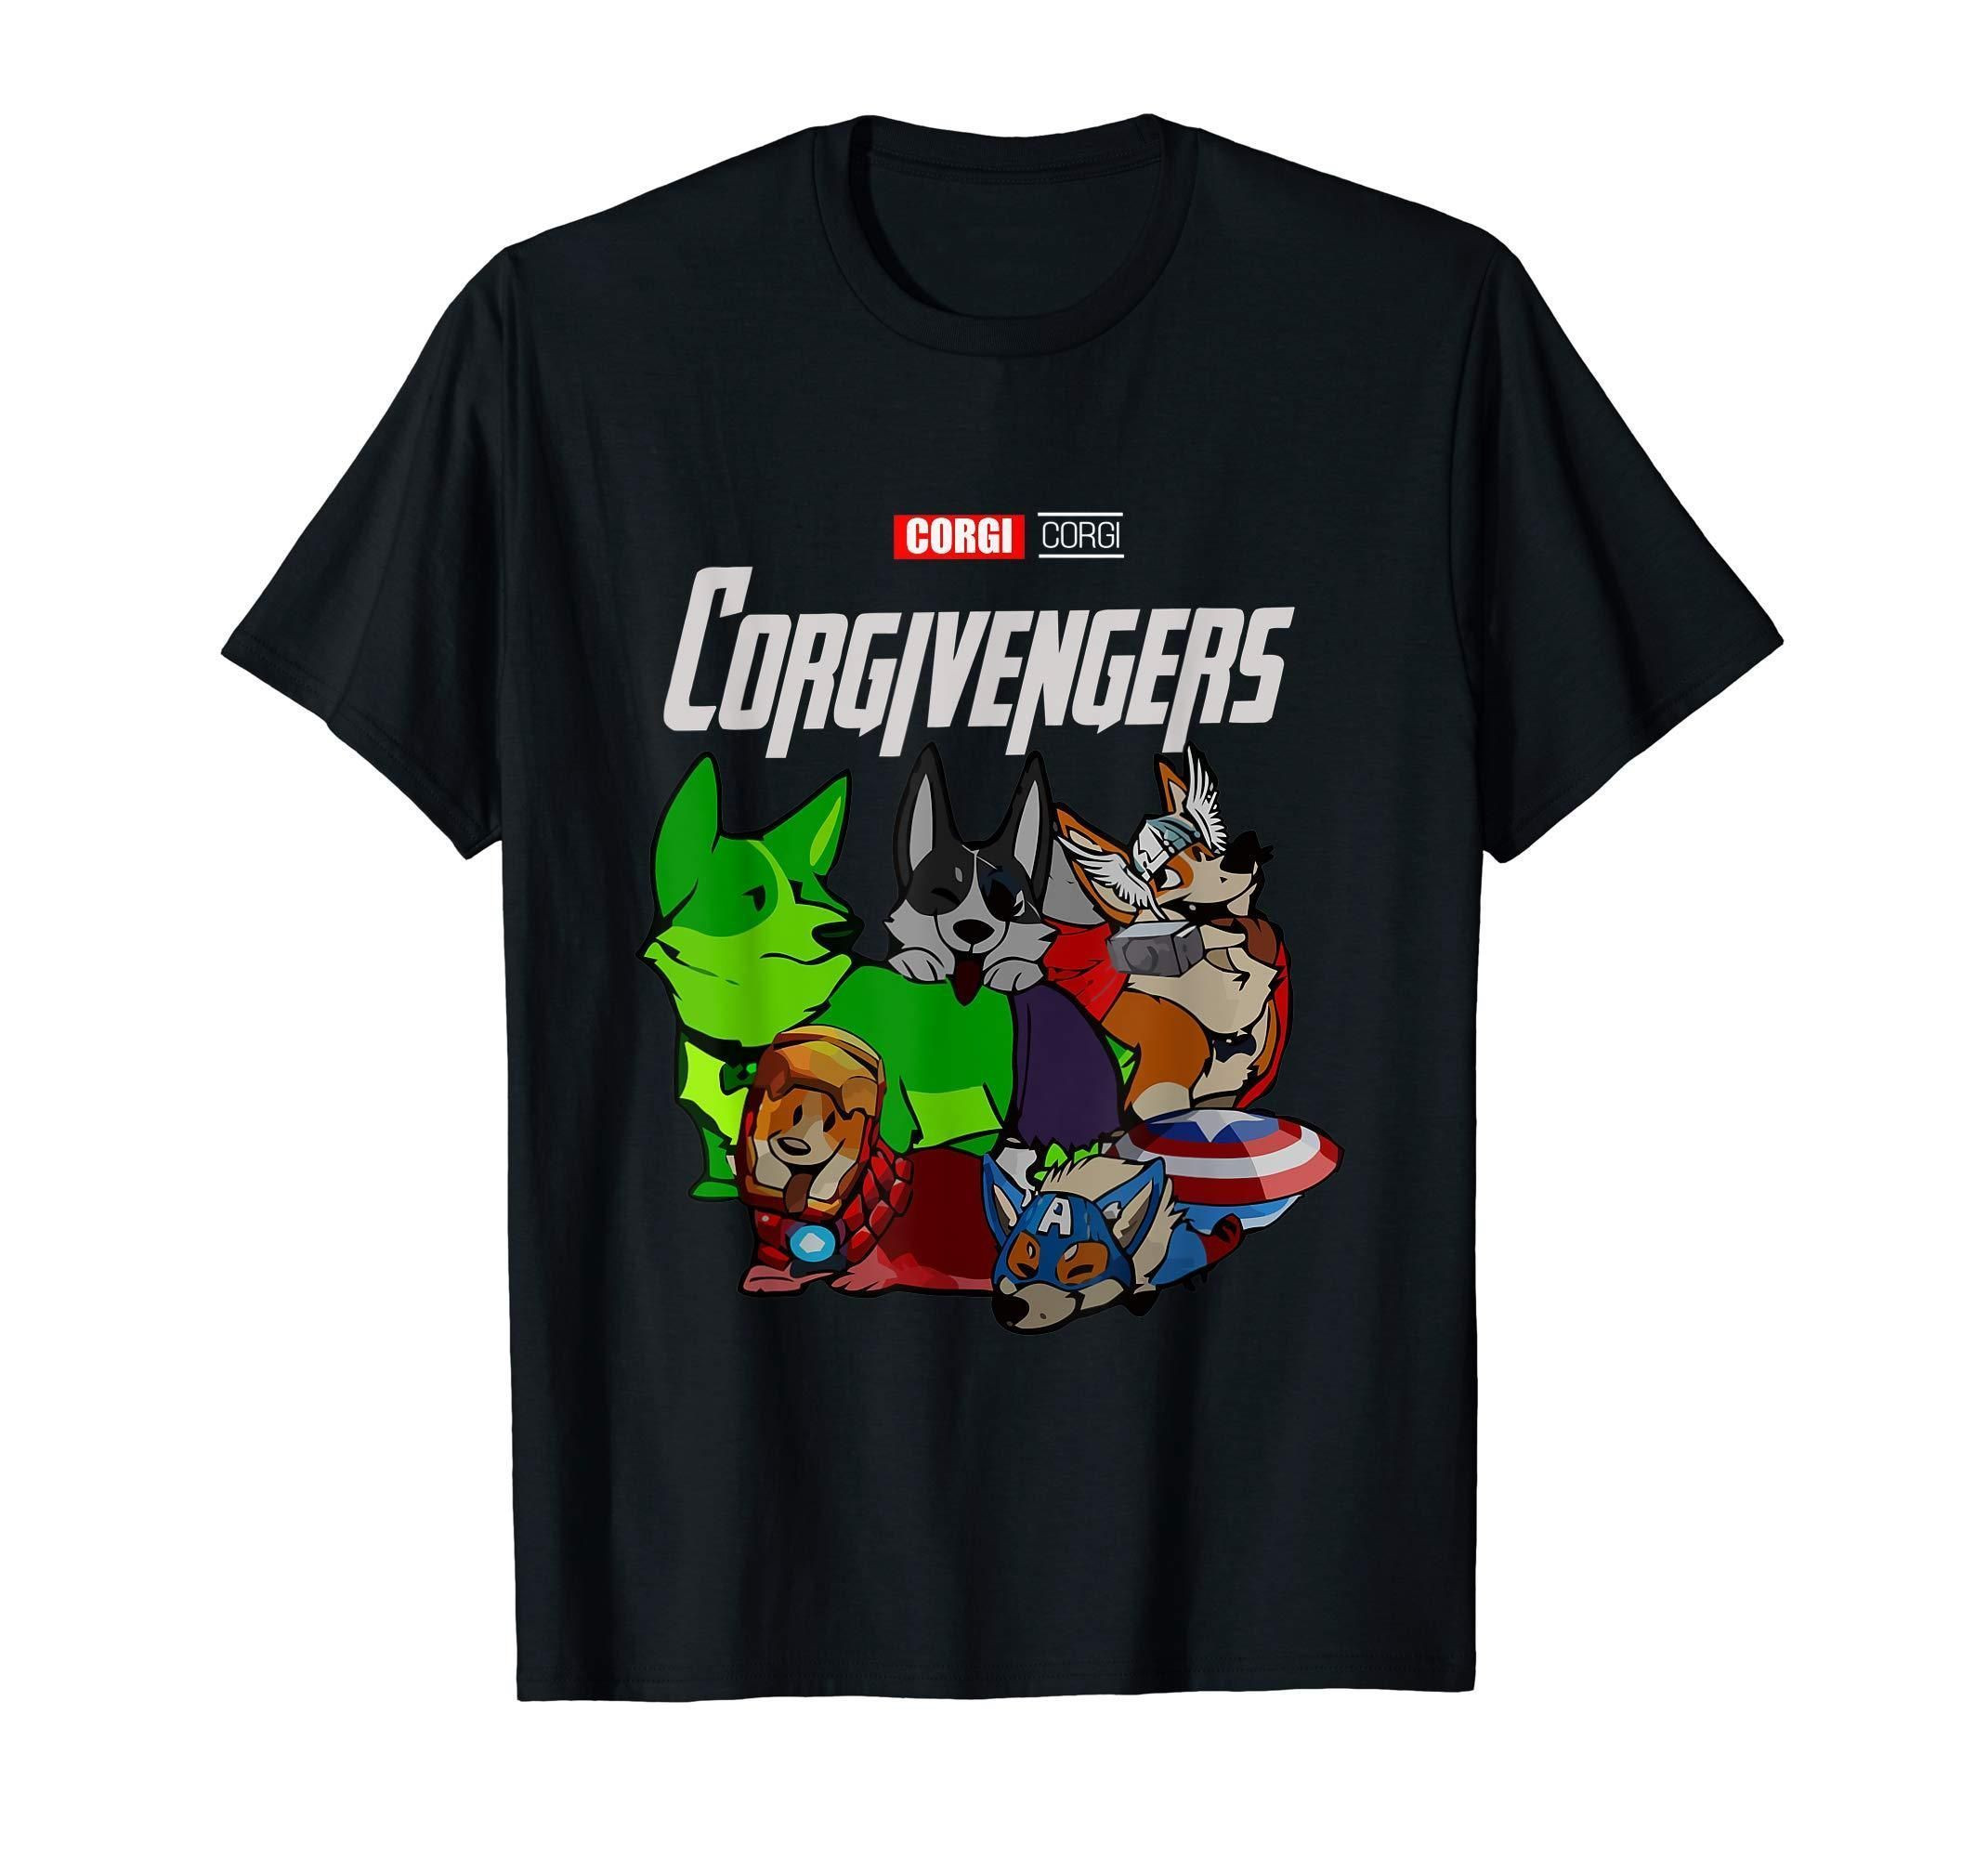 Corgivengers Corgi T-Shirt